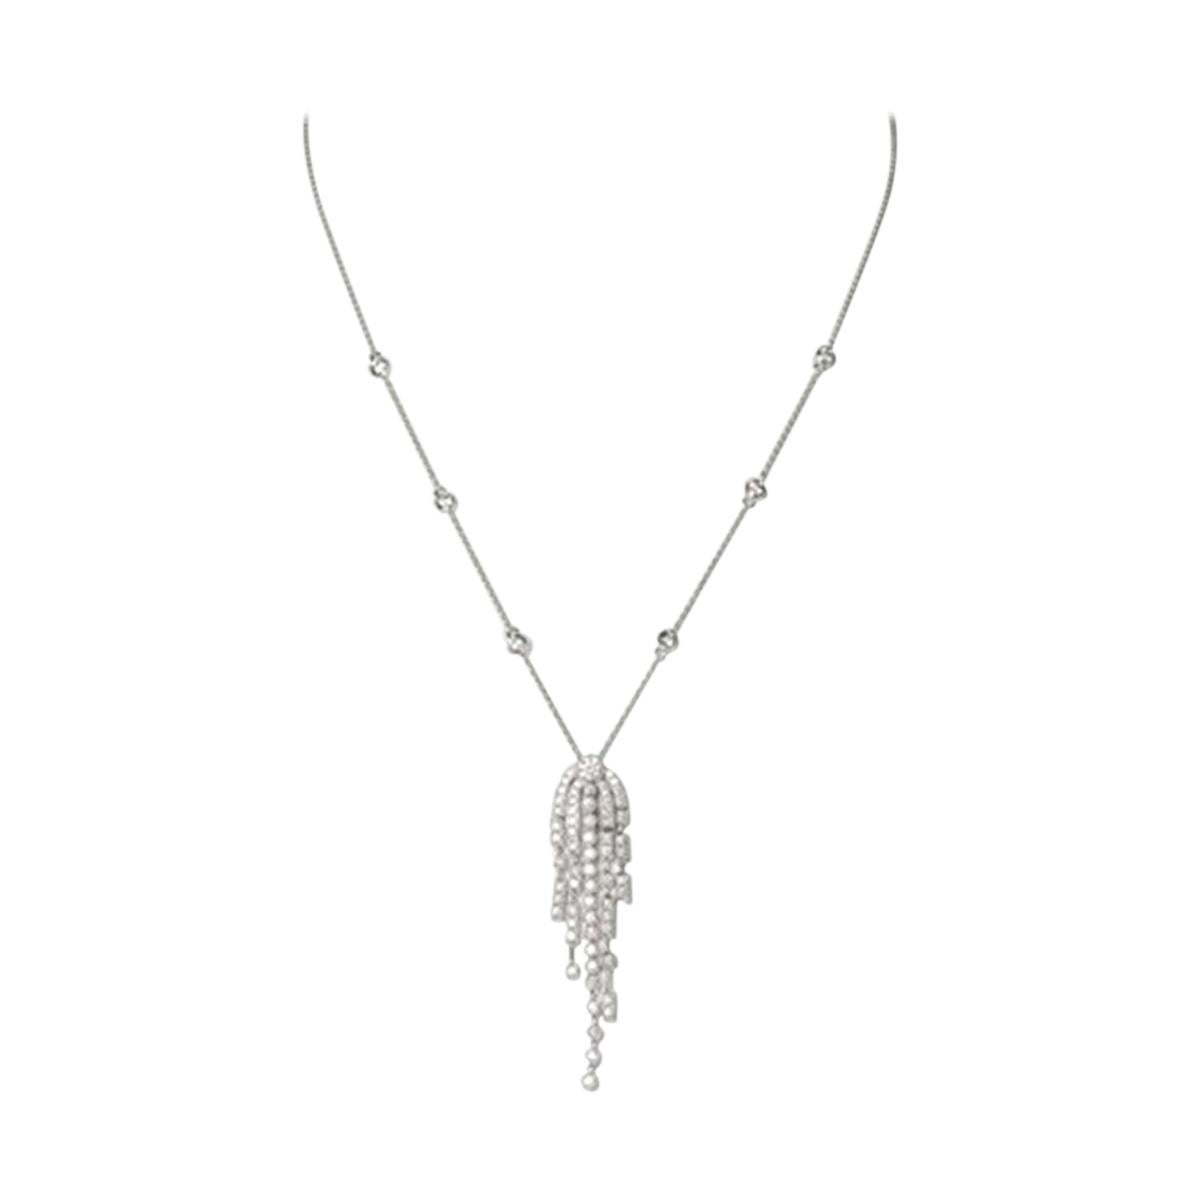 Necklace and Pendant with Diamonds of circa 1.39 Carat., 18 Karat Gold